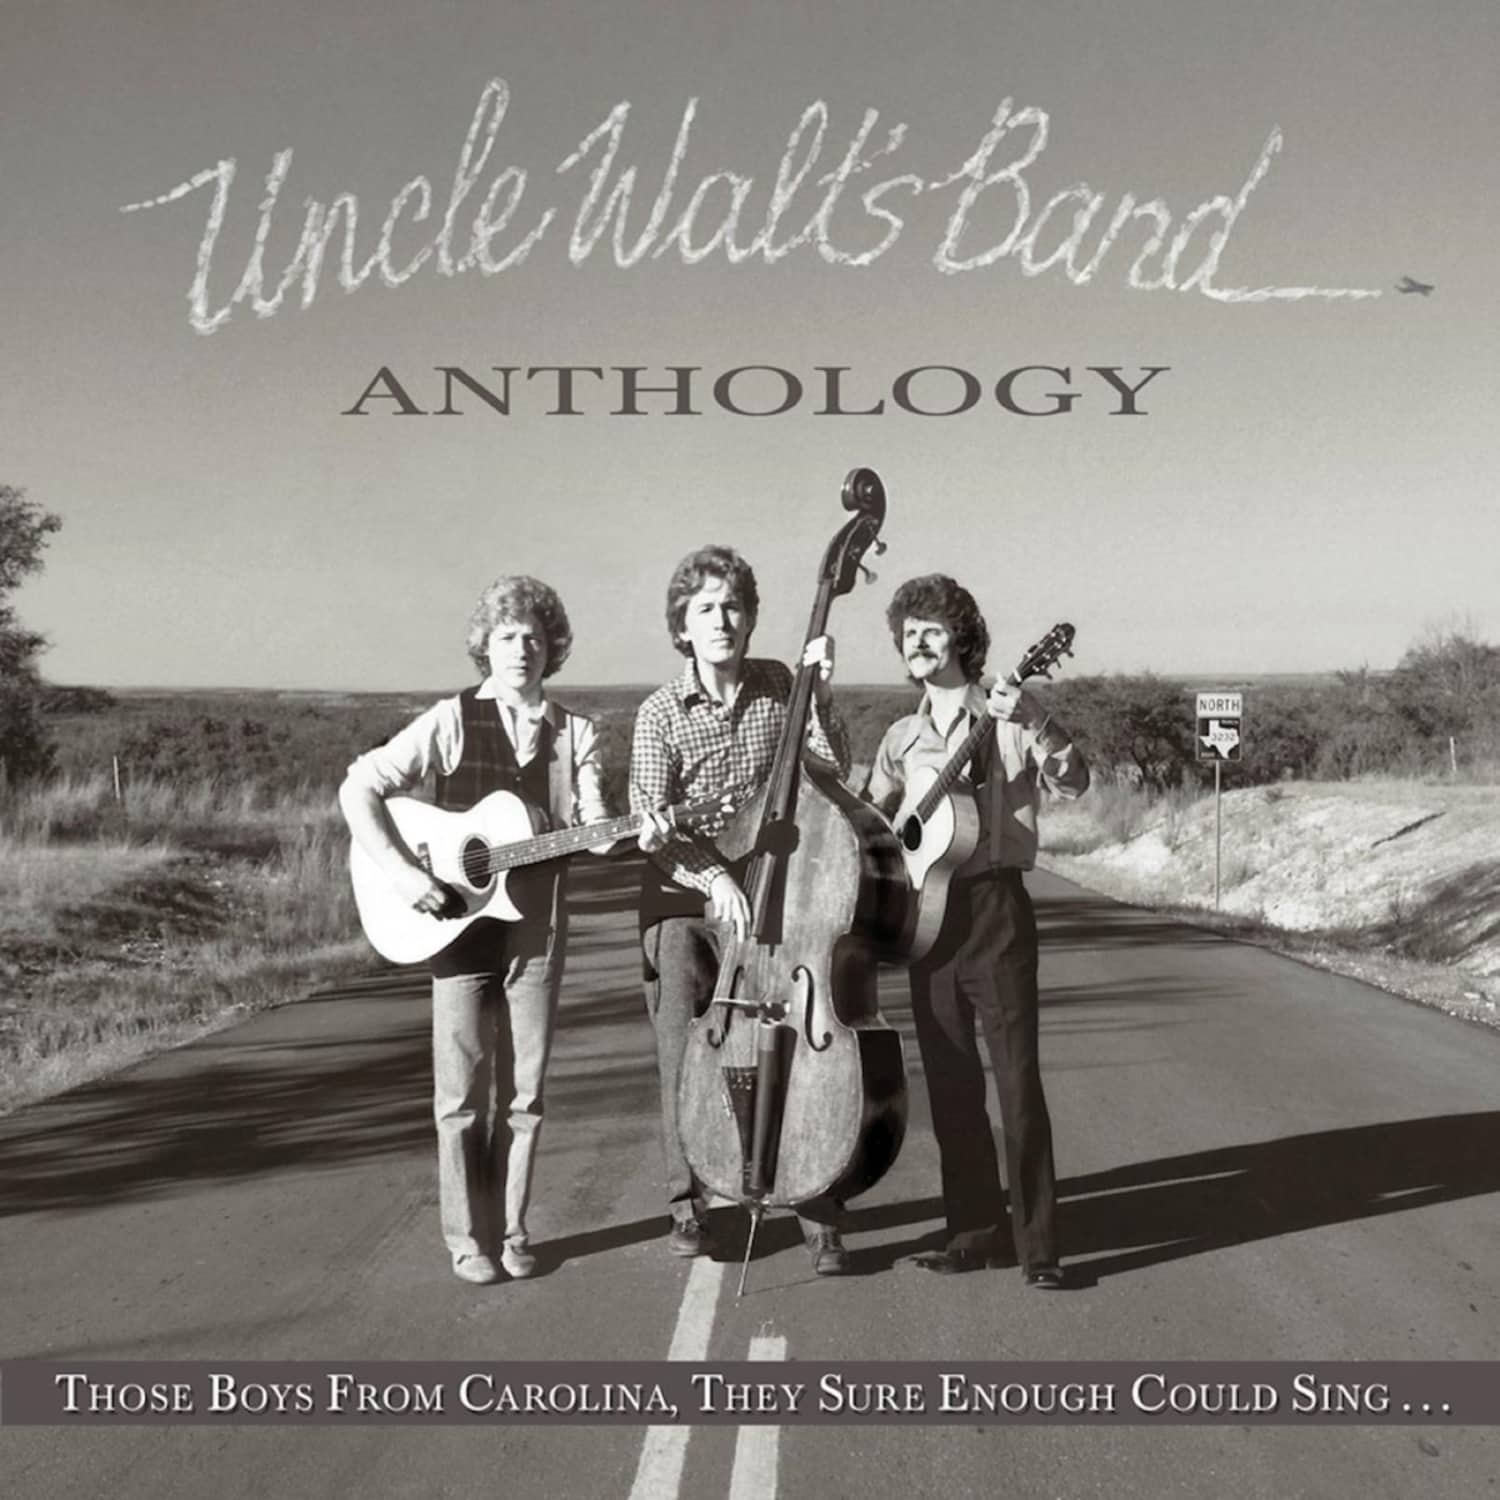 Uncle Walt s Band - ANTHOLOGY:THOSE BOYS FROM CAROLINA, 